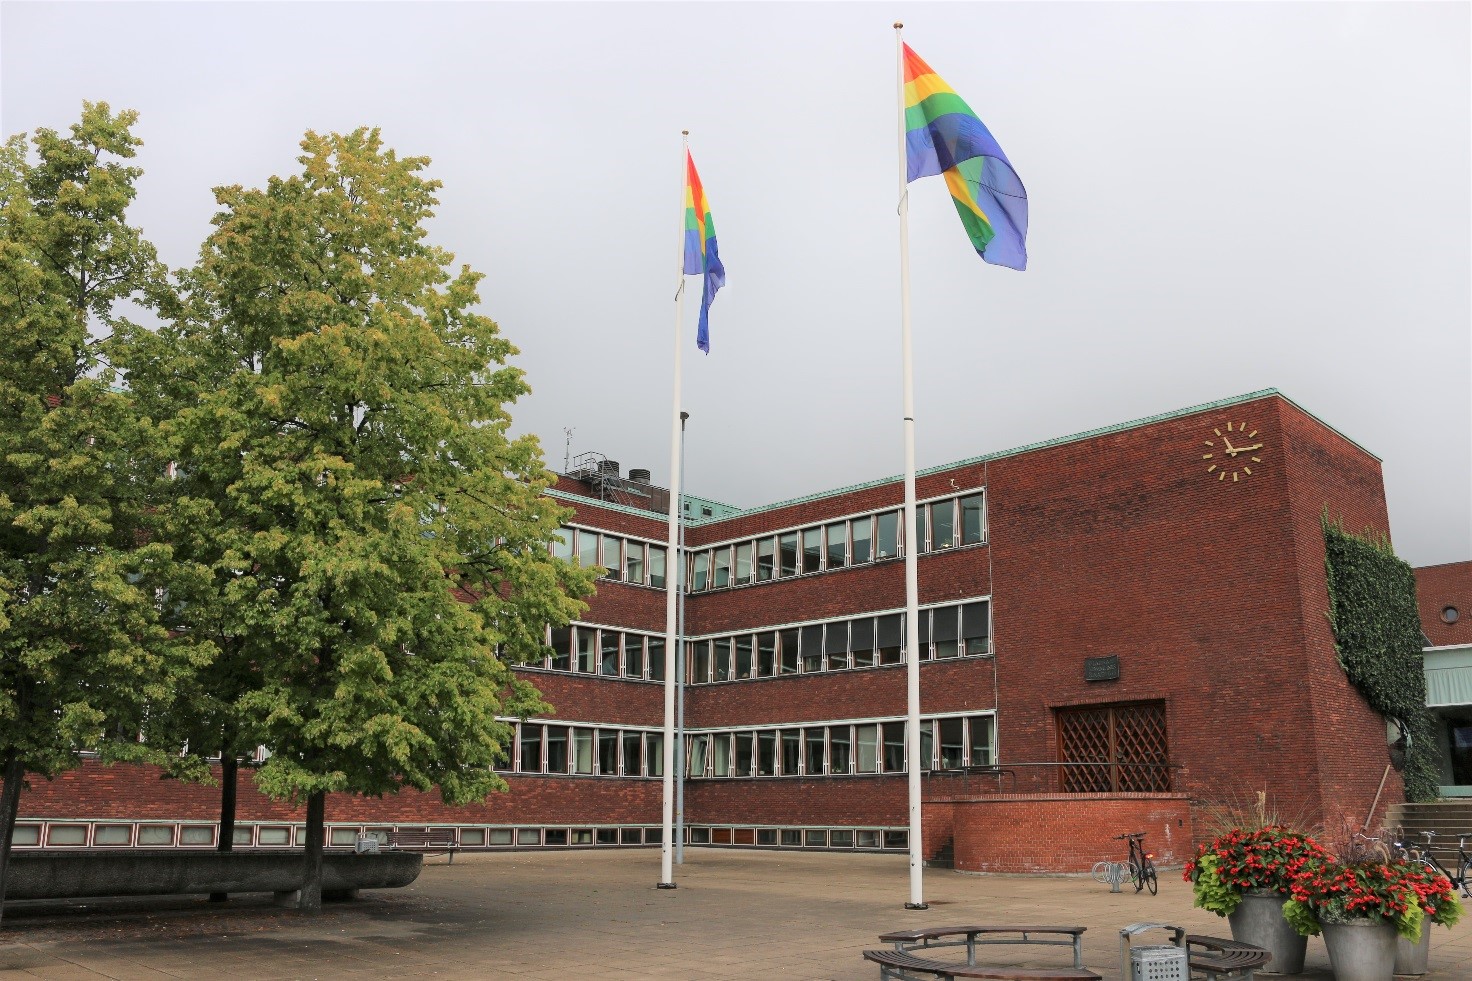 Gladsaxe flager med det regnbuefarvede flag